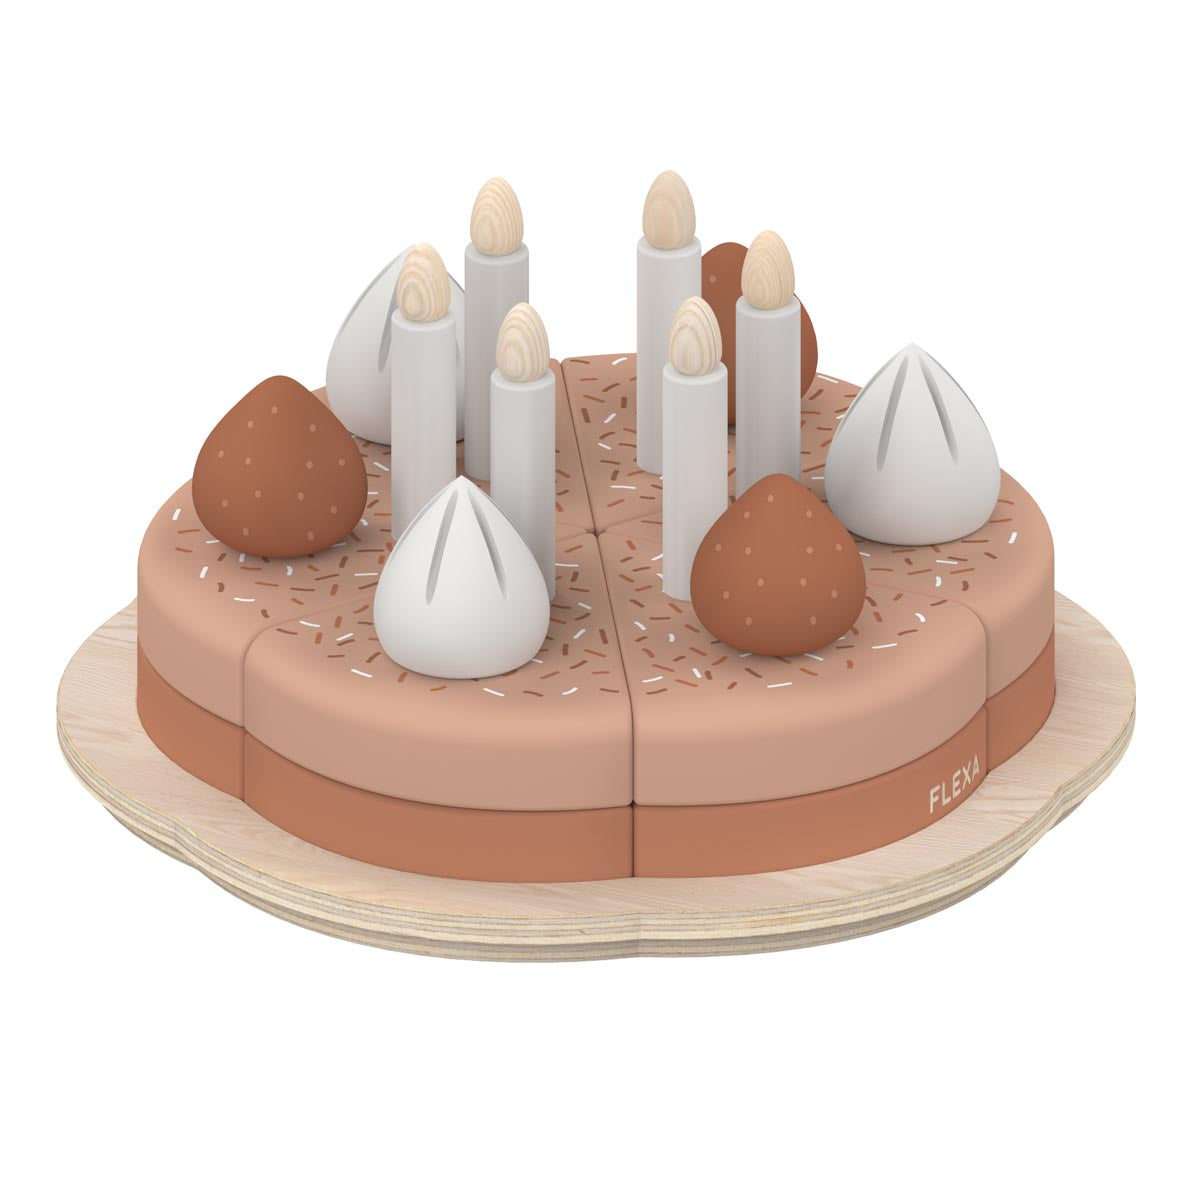 Flexa Birthday Cake